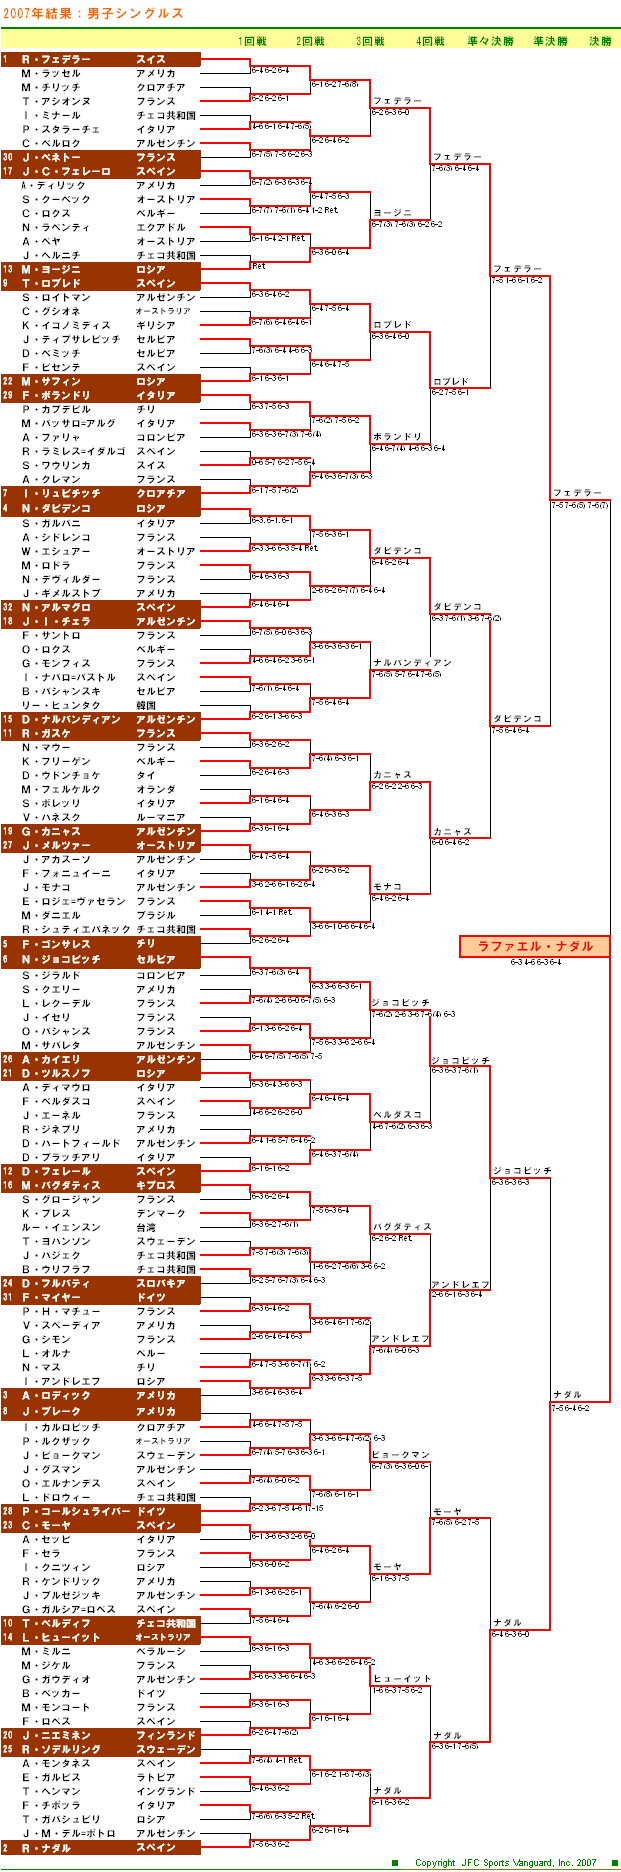 全仏オープンテニス2007　男子シングルスドロー表